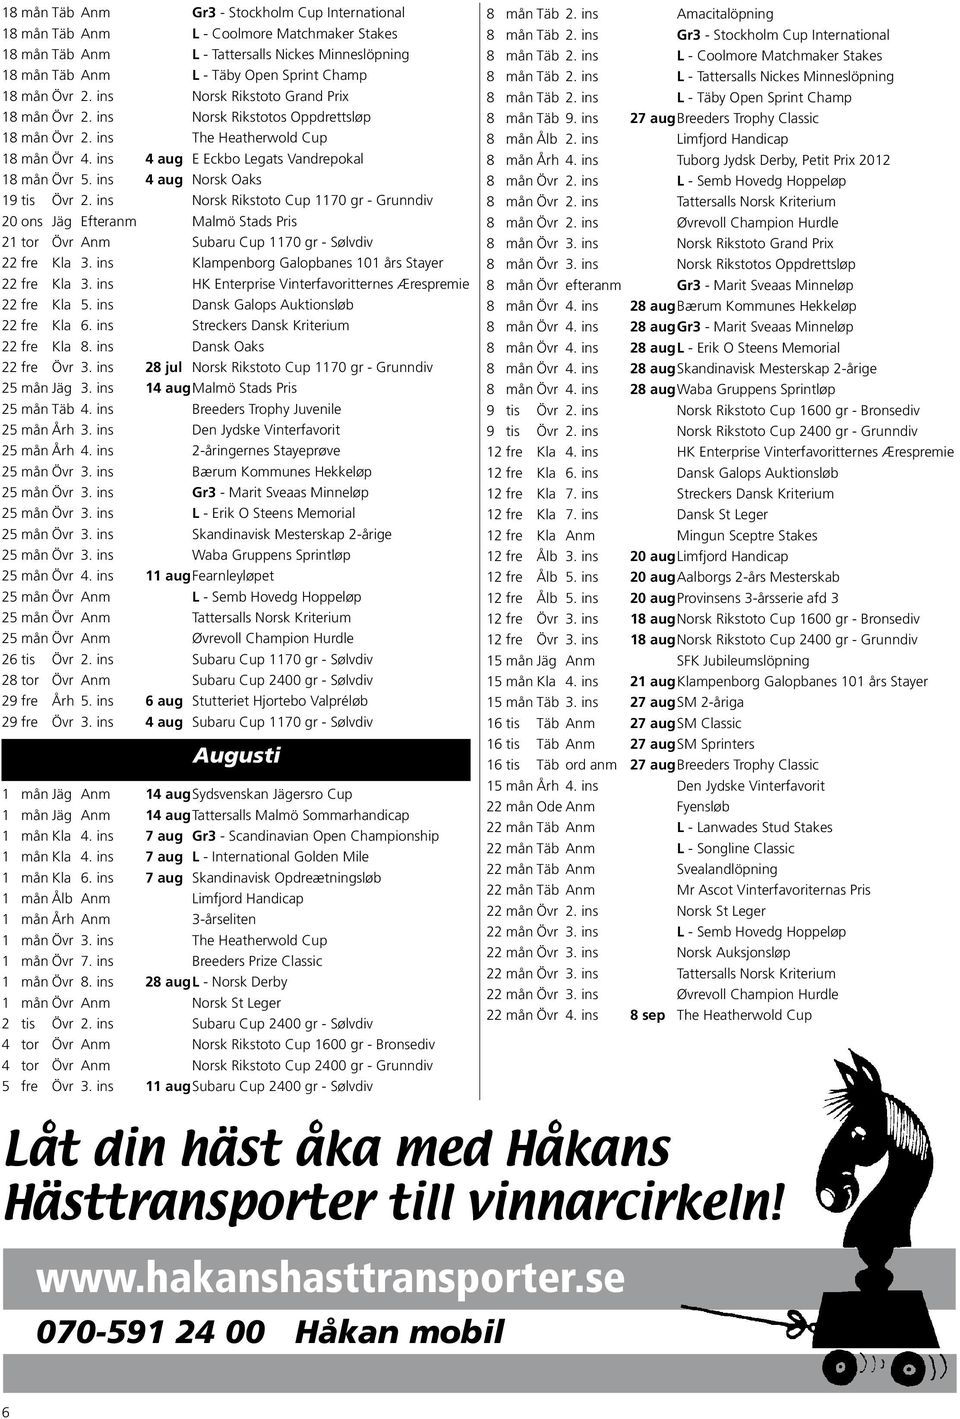 ins 4 aug Norsk Oaks 19 tis Övr 2. ins Norsk Rikstoto Cup 1170 gr - Grunndiv 20 ons Jäg Efteranm Malmö Stads Pris 21 tor Övr Anm Subaru Cup 1170 gr - Sølvdiv 22 fre Kla 3.